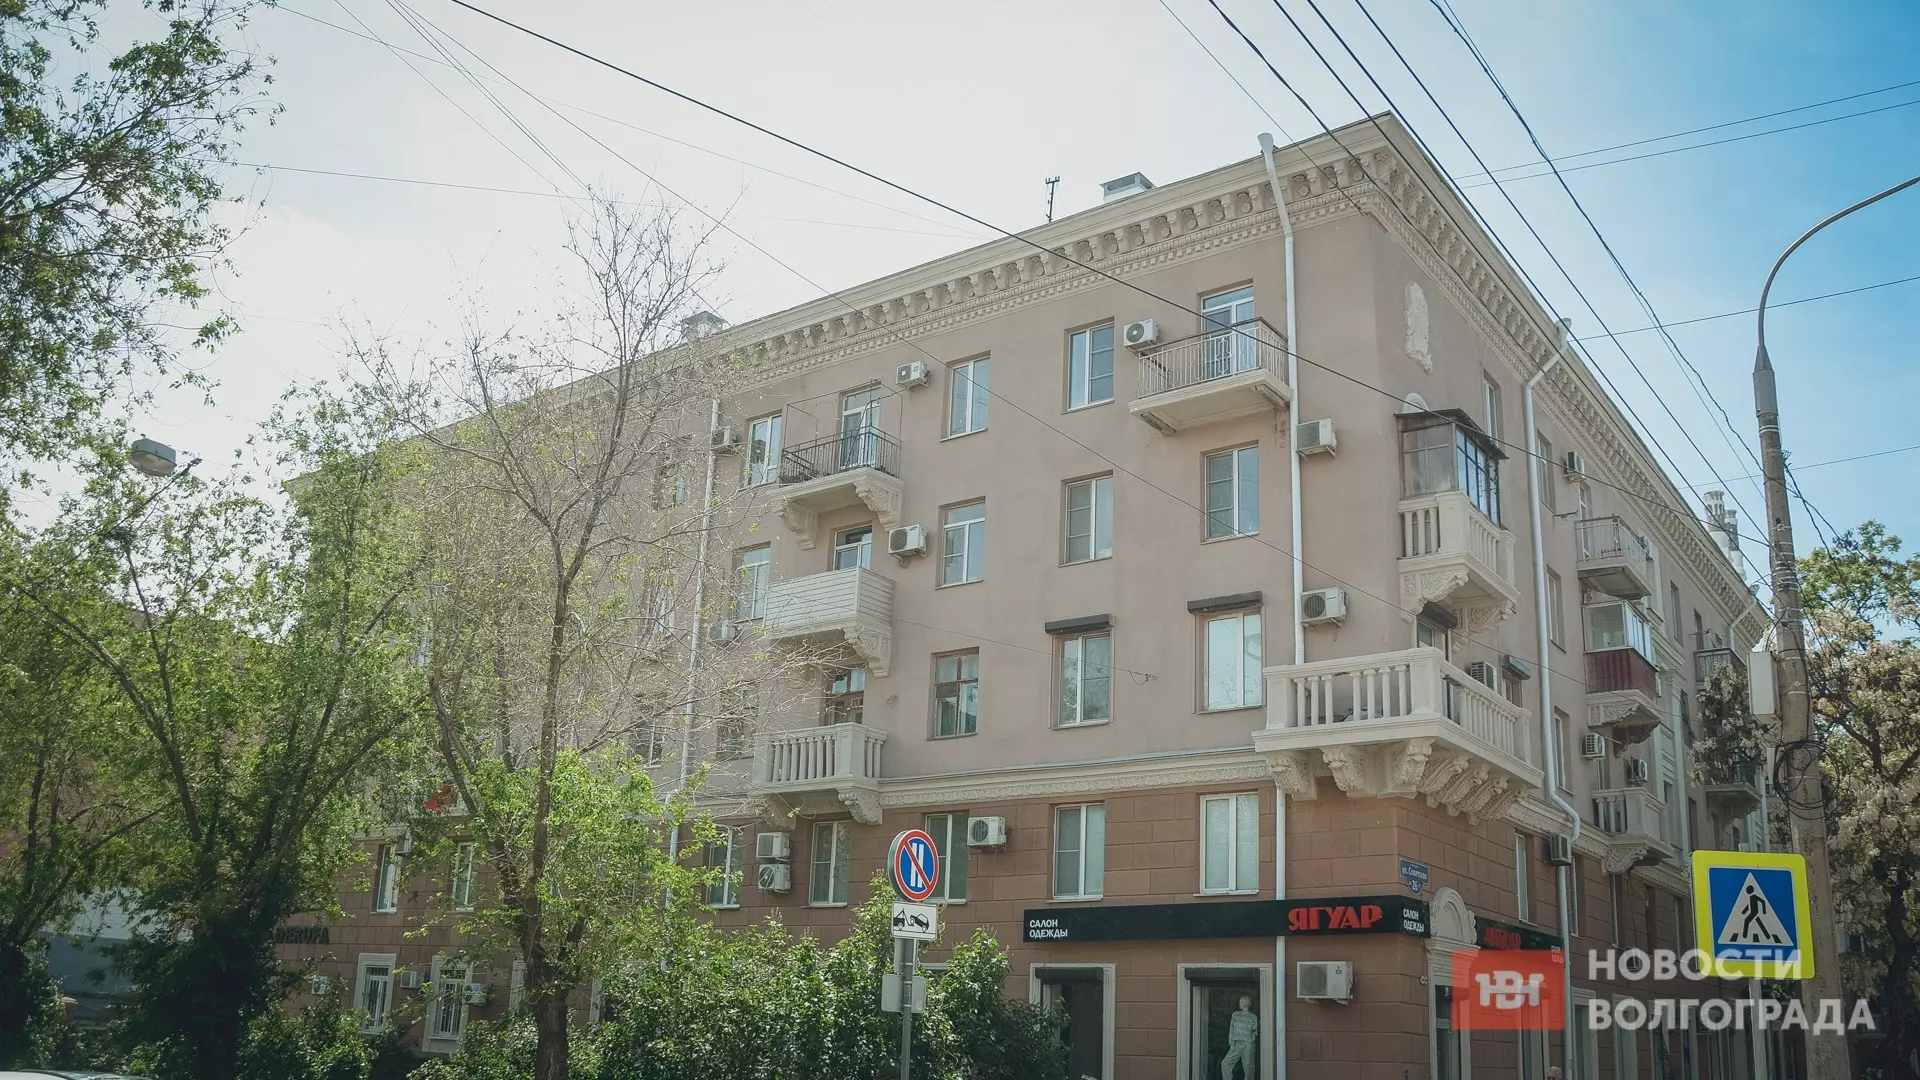 Чеченский подрядчик сбивает лепнину с дома-памятника в Волгограде